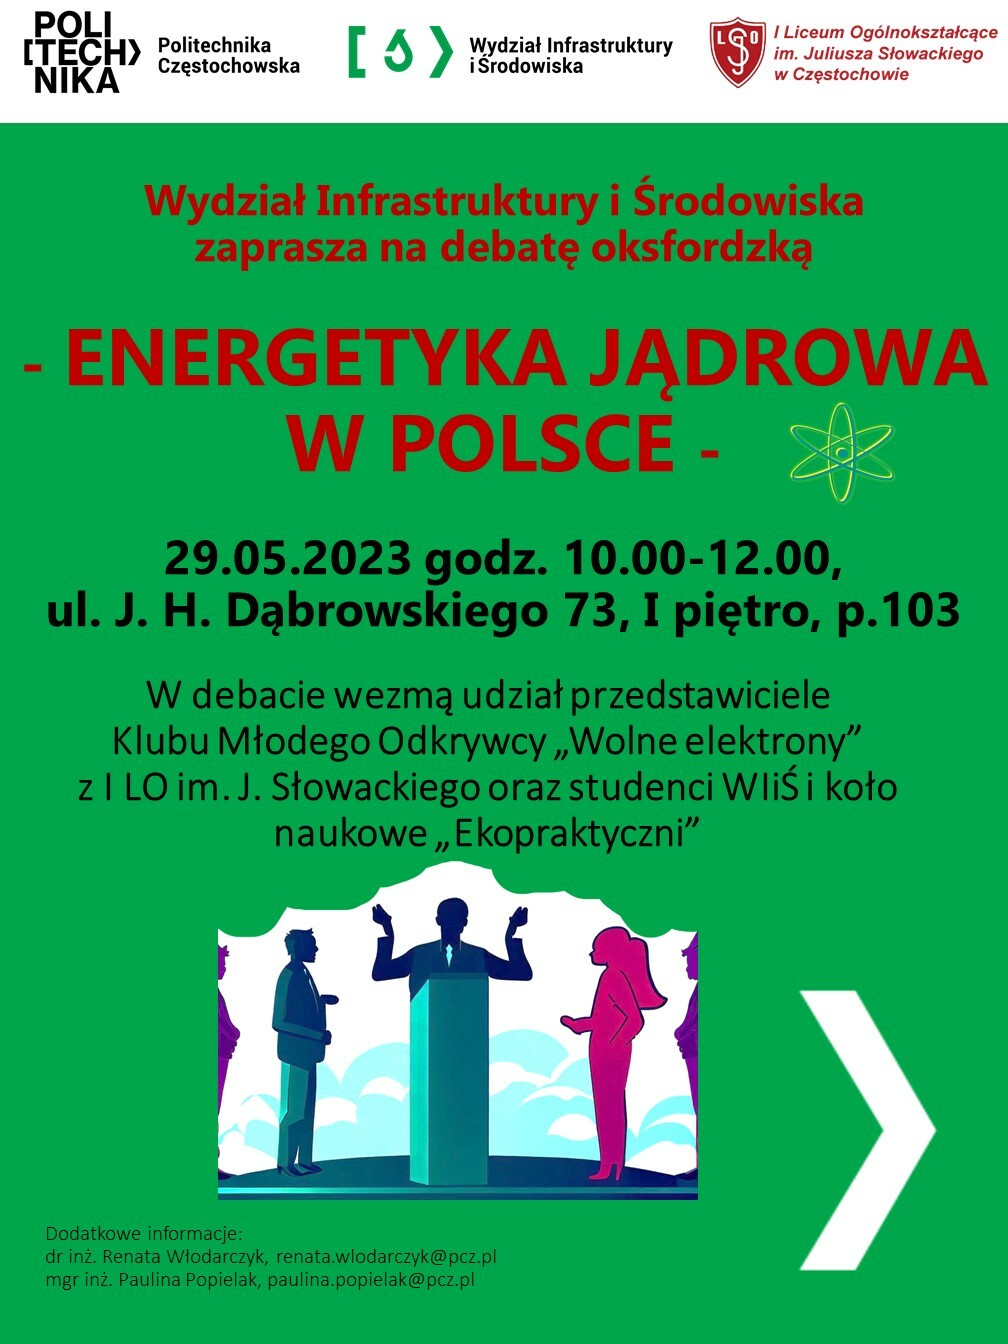 Zapraszamy wszystkich zainteresowanych na Debatę oksfordzką, której tematem będzie: Energetyka jądrowa w Polsce.  Debata z udziałem przedstawicieli Klubu Młodego Odkrywcy "Wolne elektrony" z I LO im. J. Słowackiego oraz studentów WIiŚ i koła naukowego "Ekopraktyczni" odbędzie się 29.05.2023 w godz. 10.00- 12.00 w p. 103, I piętro przy ul. J. H. Dąbrowskiego 73. Do zobaczenia.